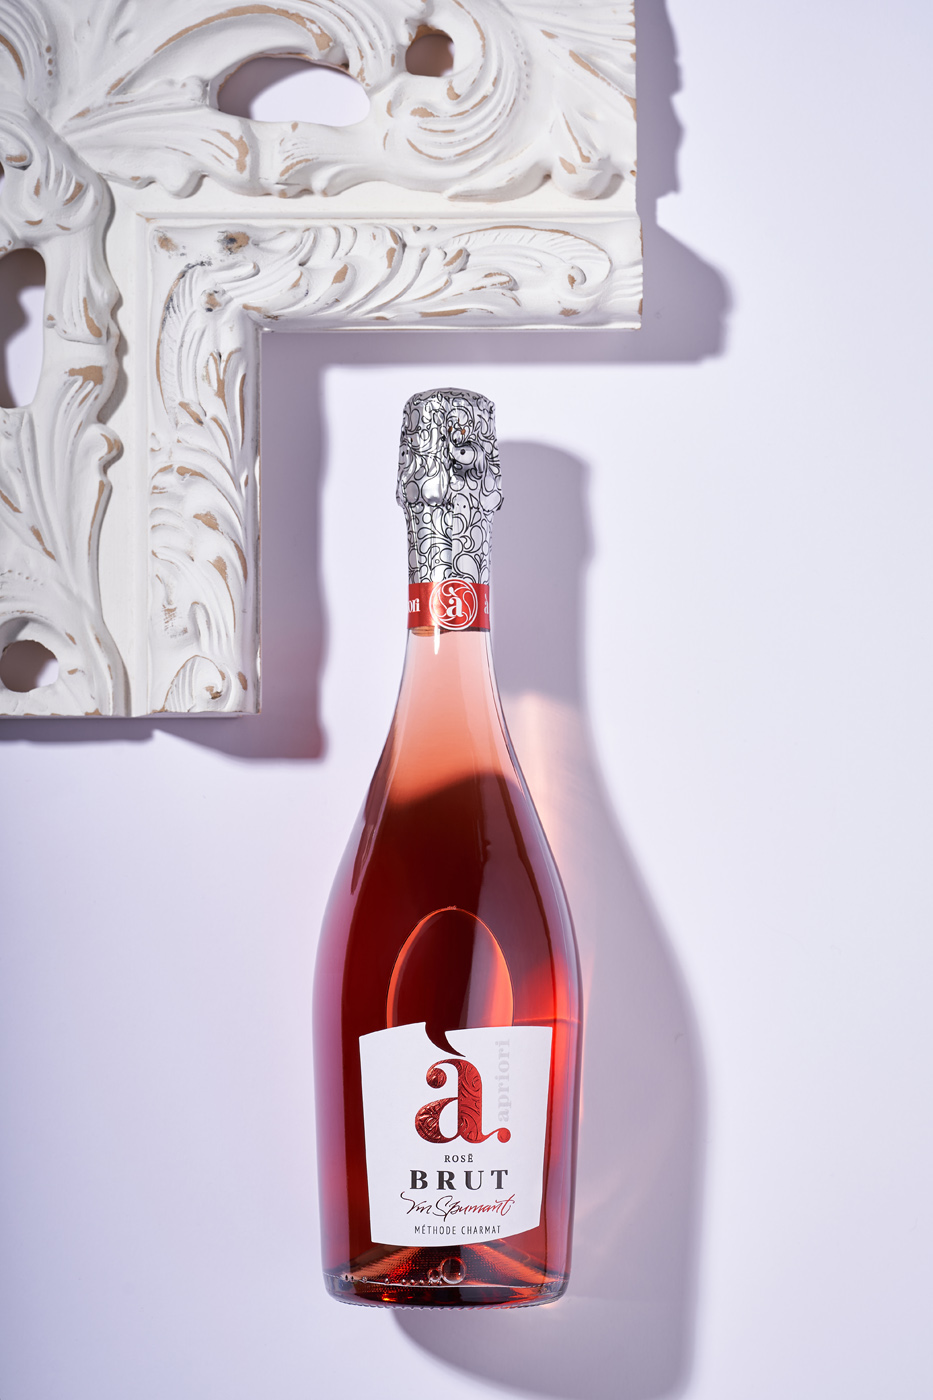 43oz Design Studio Created Apriori Brut Sparkling Wine Label Redesign